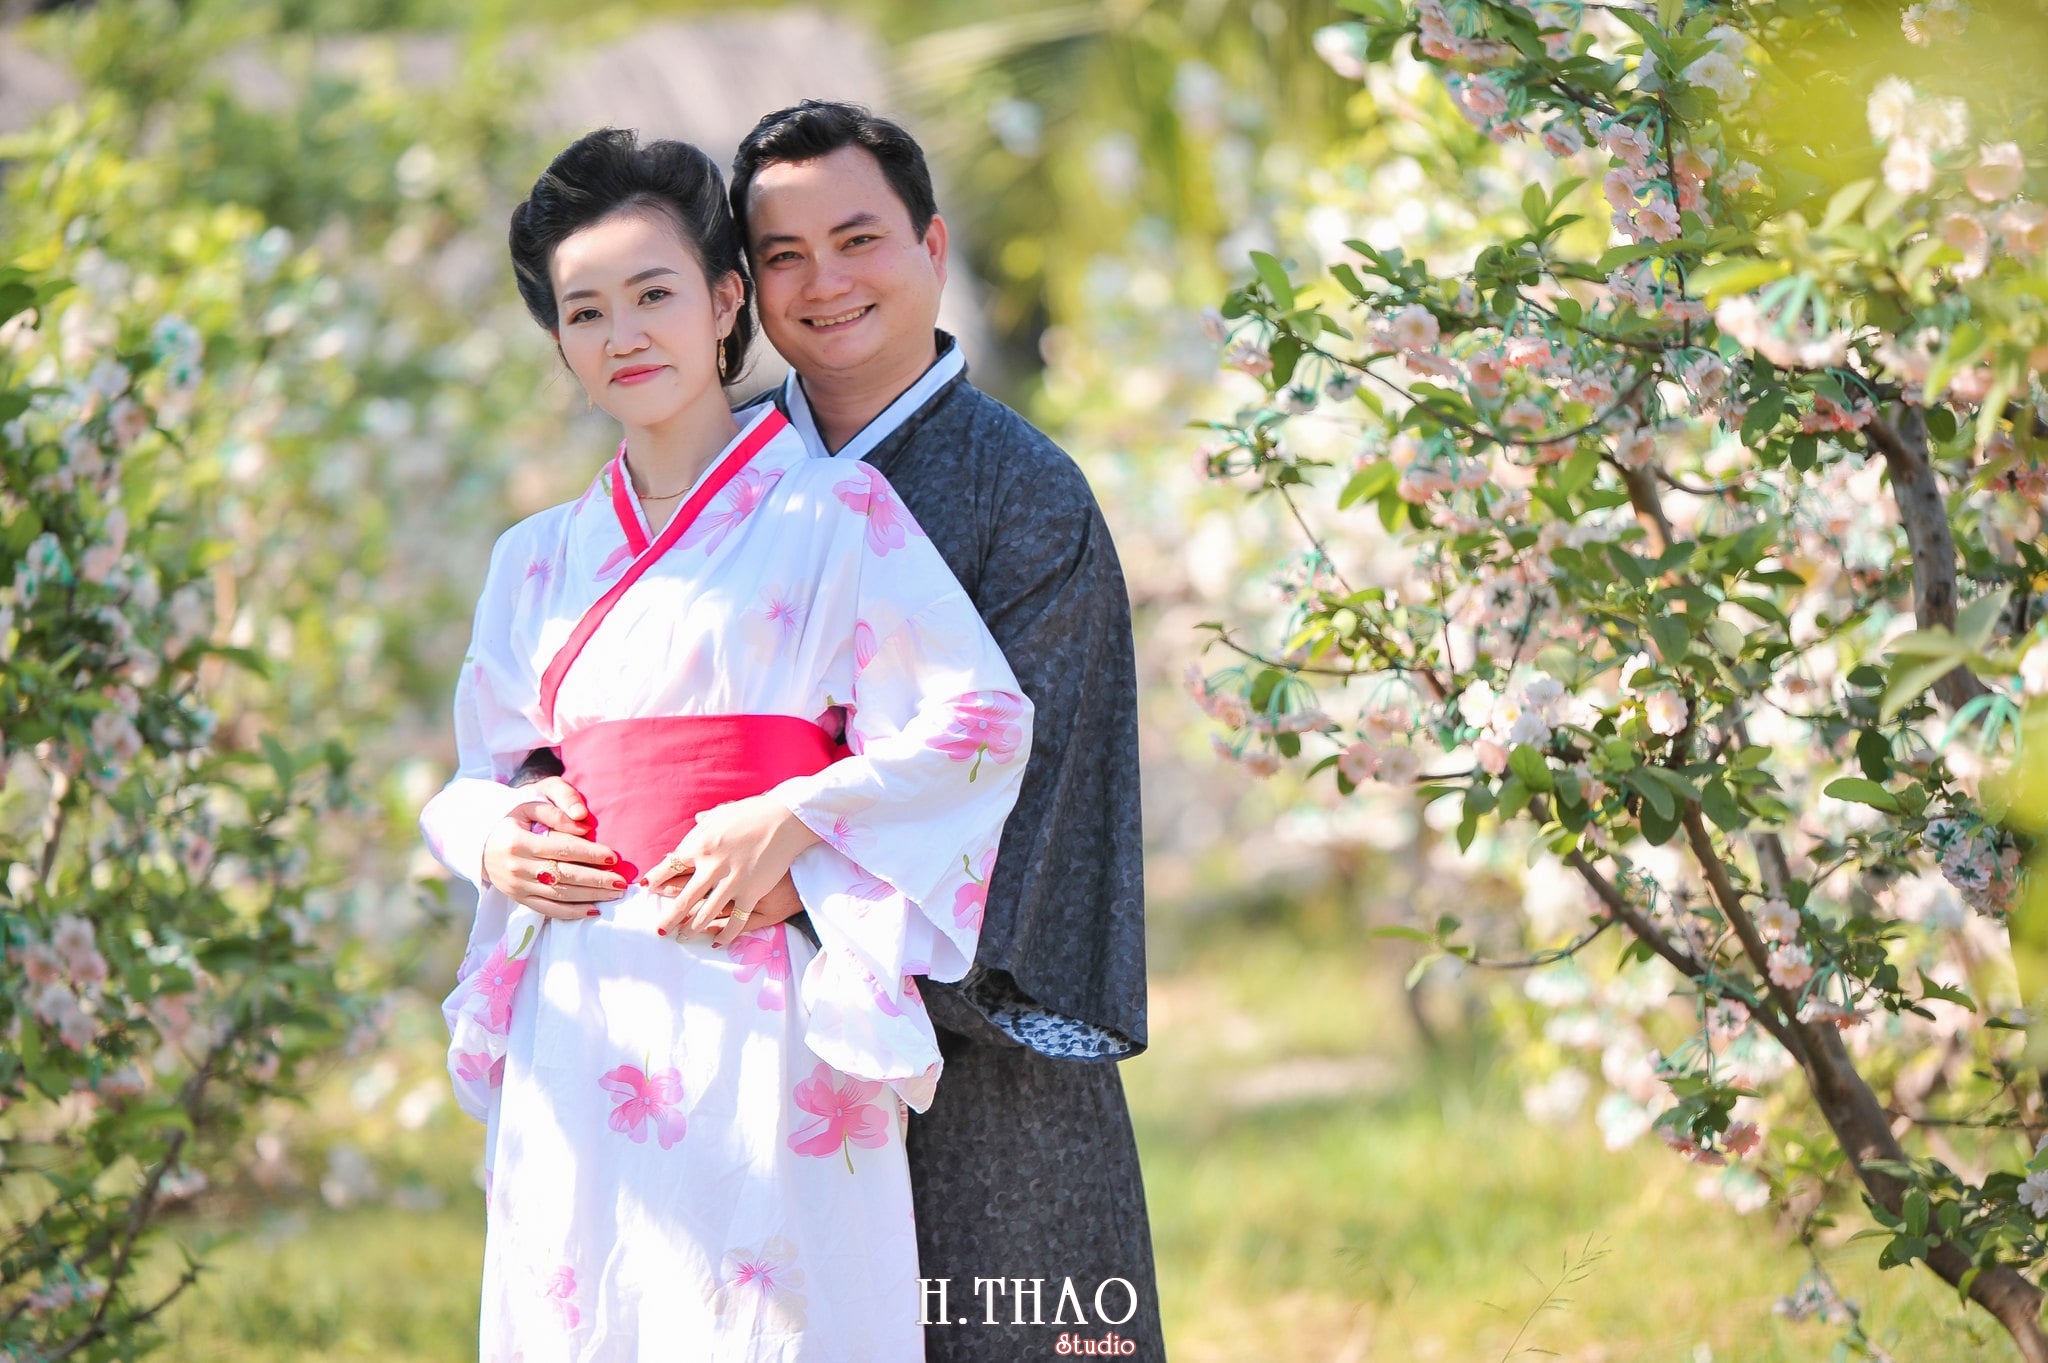 Anh chup voi Kimono 5 - Bộ ảnh couple chụp với Kimono theo phong cách Nhật Bản